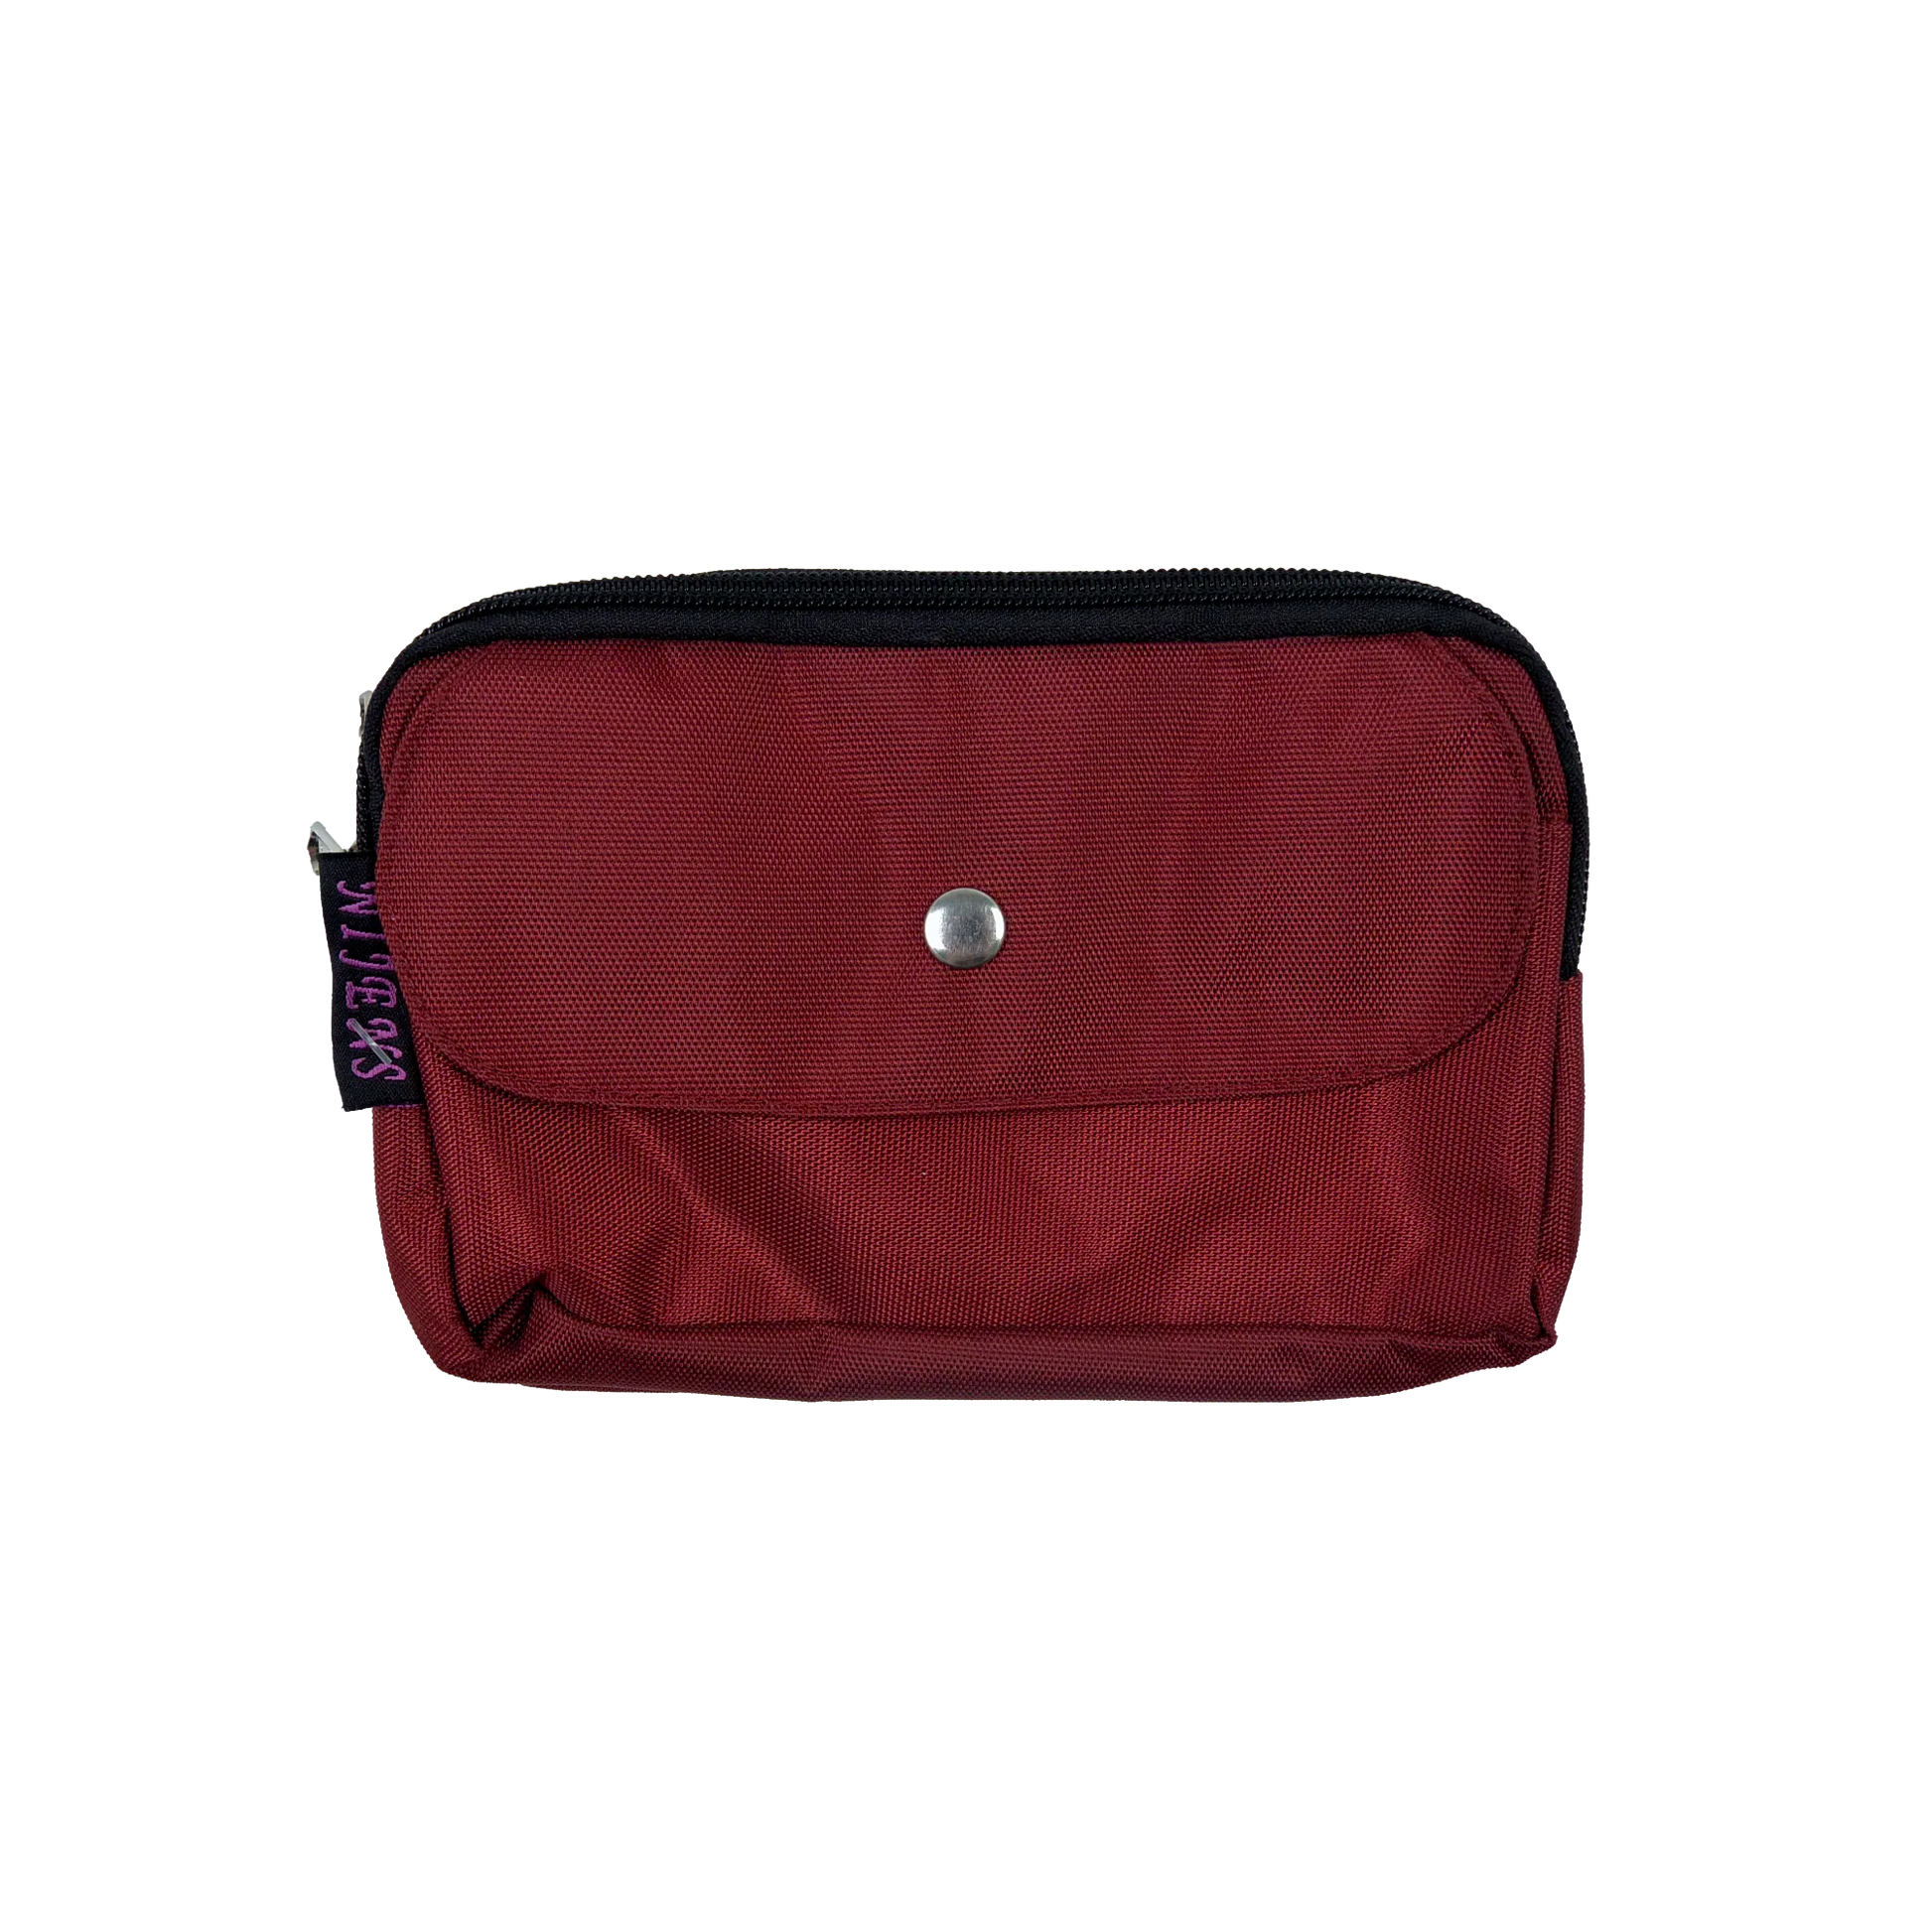 Beuteltasche aus wasserabweisendem Stoff, rot. Die Tasche besitzt Reisverschlussfächer und ein Einsteckfach vorne.